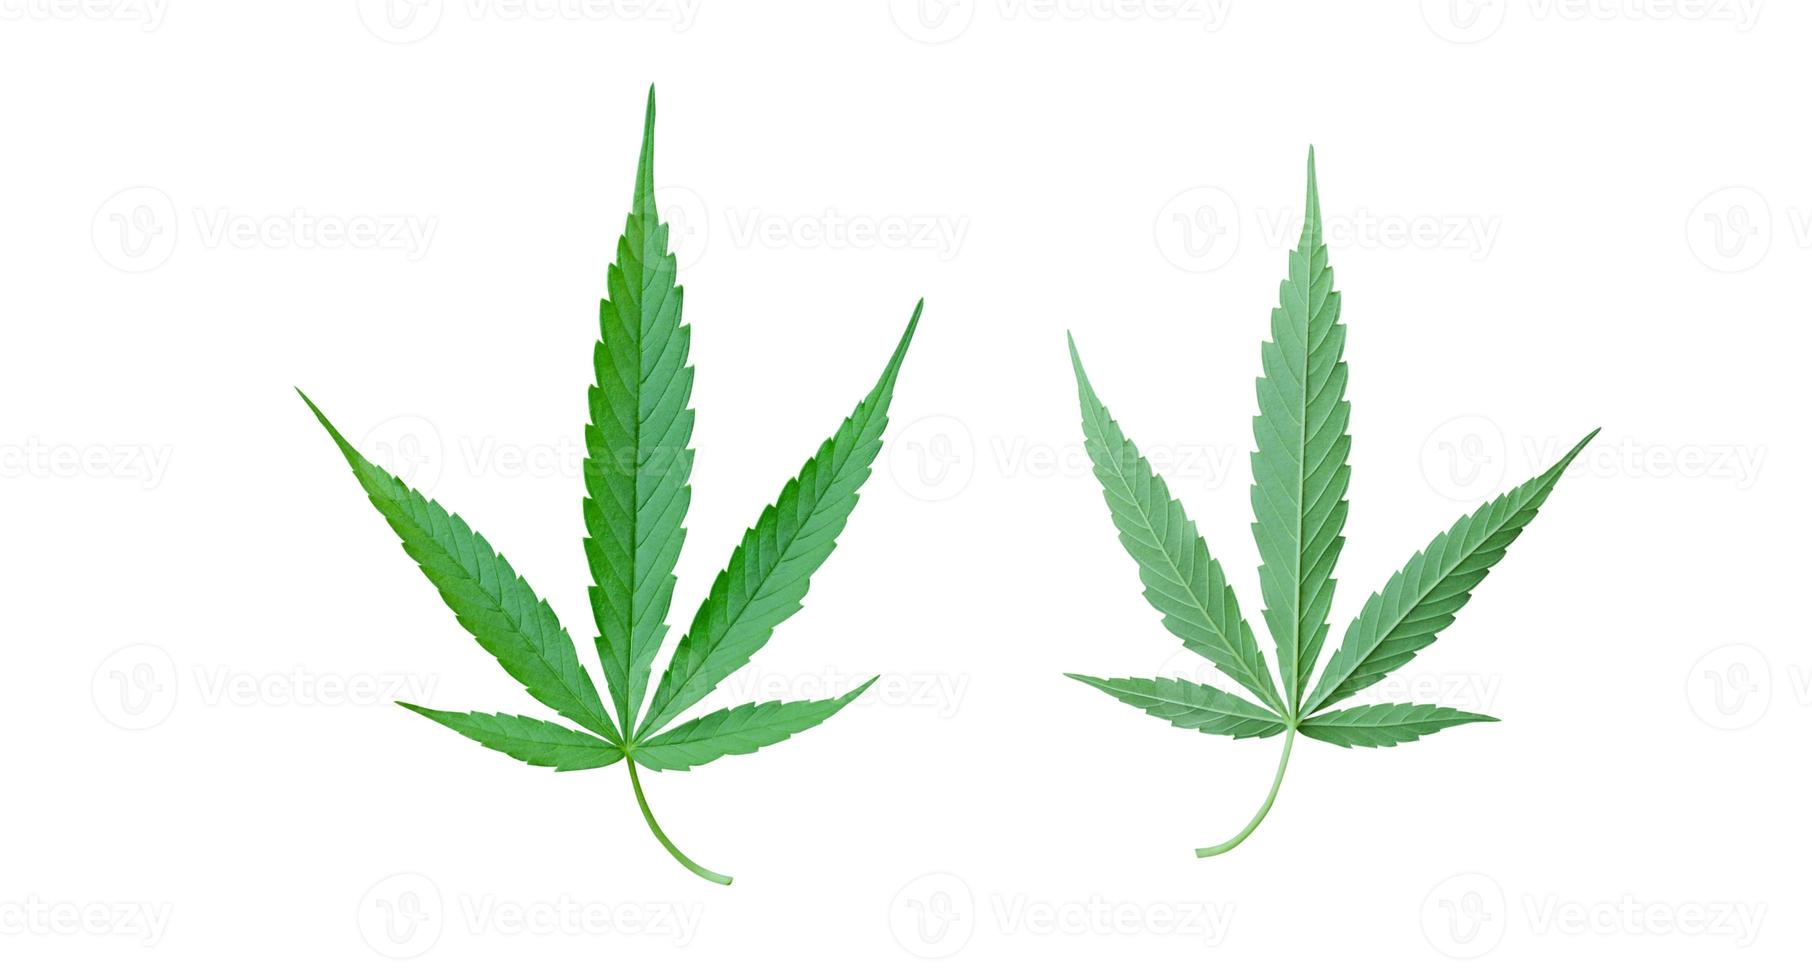 folha de cannabis isolada em um fundo branco foto